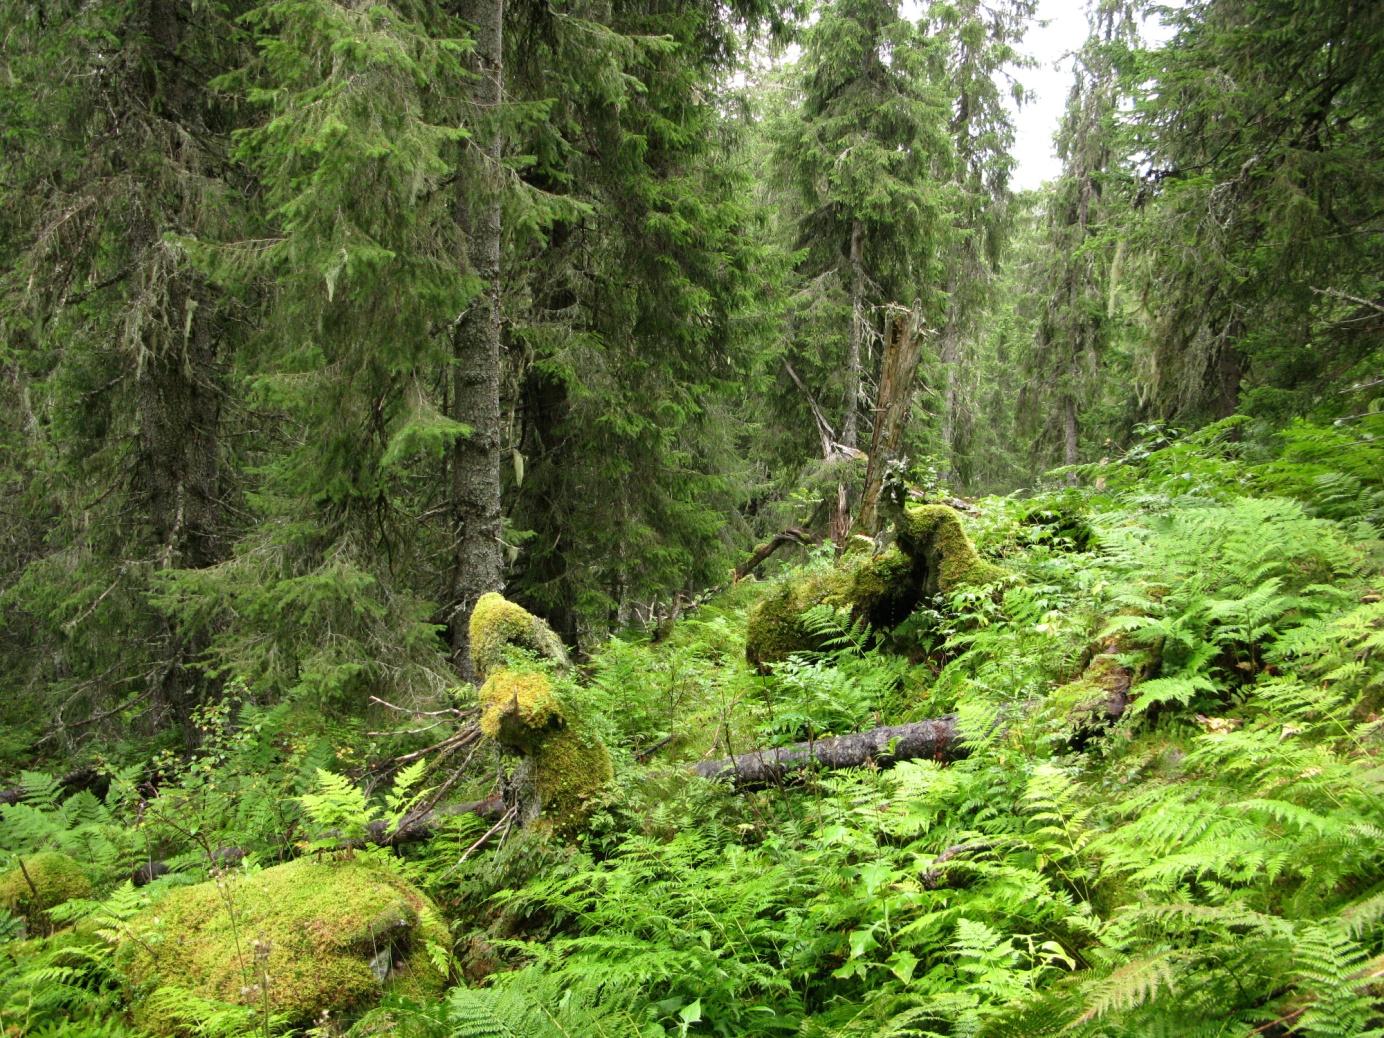 Forord BioFokus har på oppdrag fra Fylkesmannen i Sør-Trøndelag gjort en inventering og kartfesting av rødlistearter og andre signalarter i gammelskog i deler av Bymarka naturreservat i Trondheim